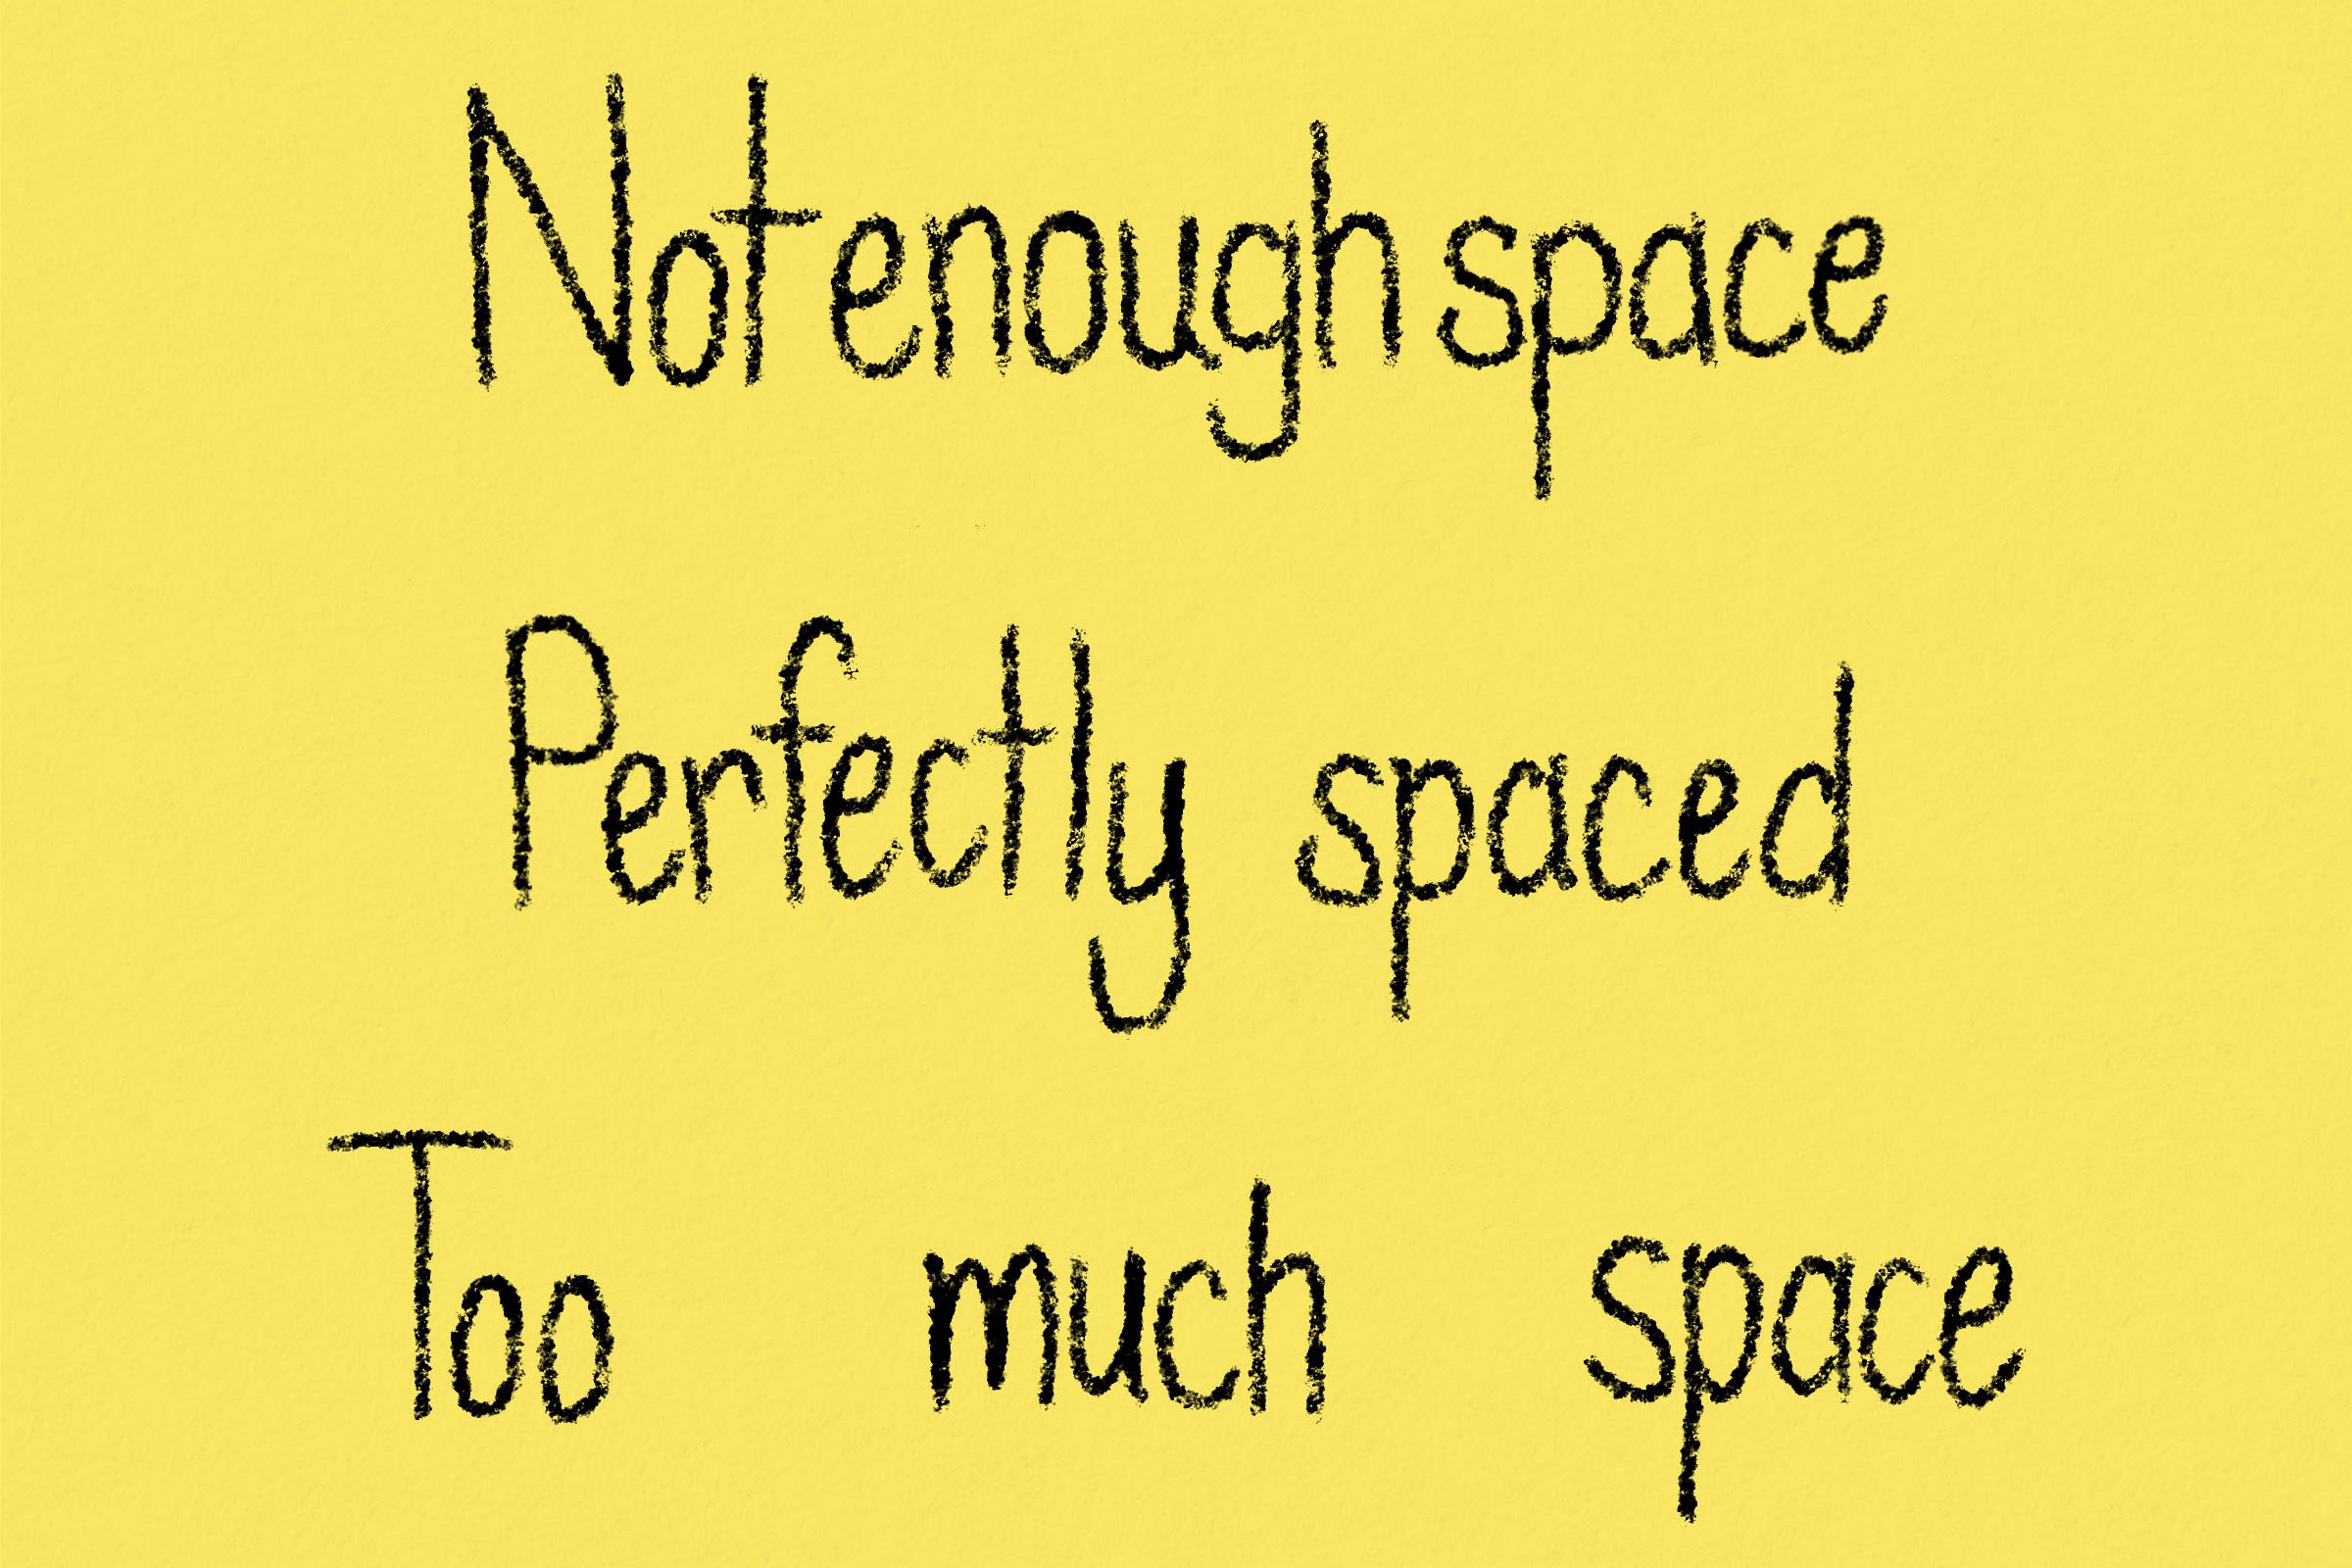 Handwriting showing space between words